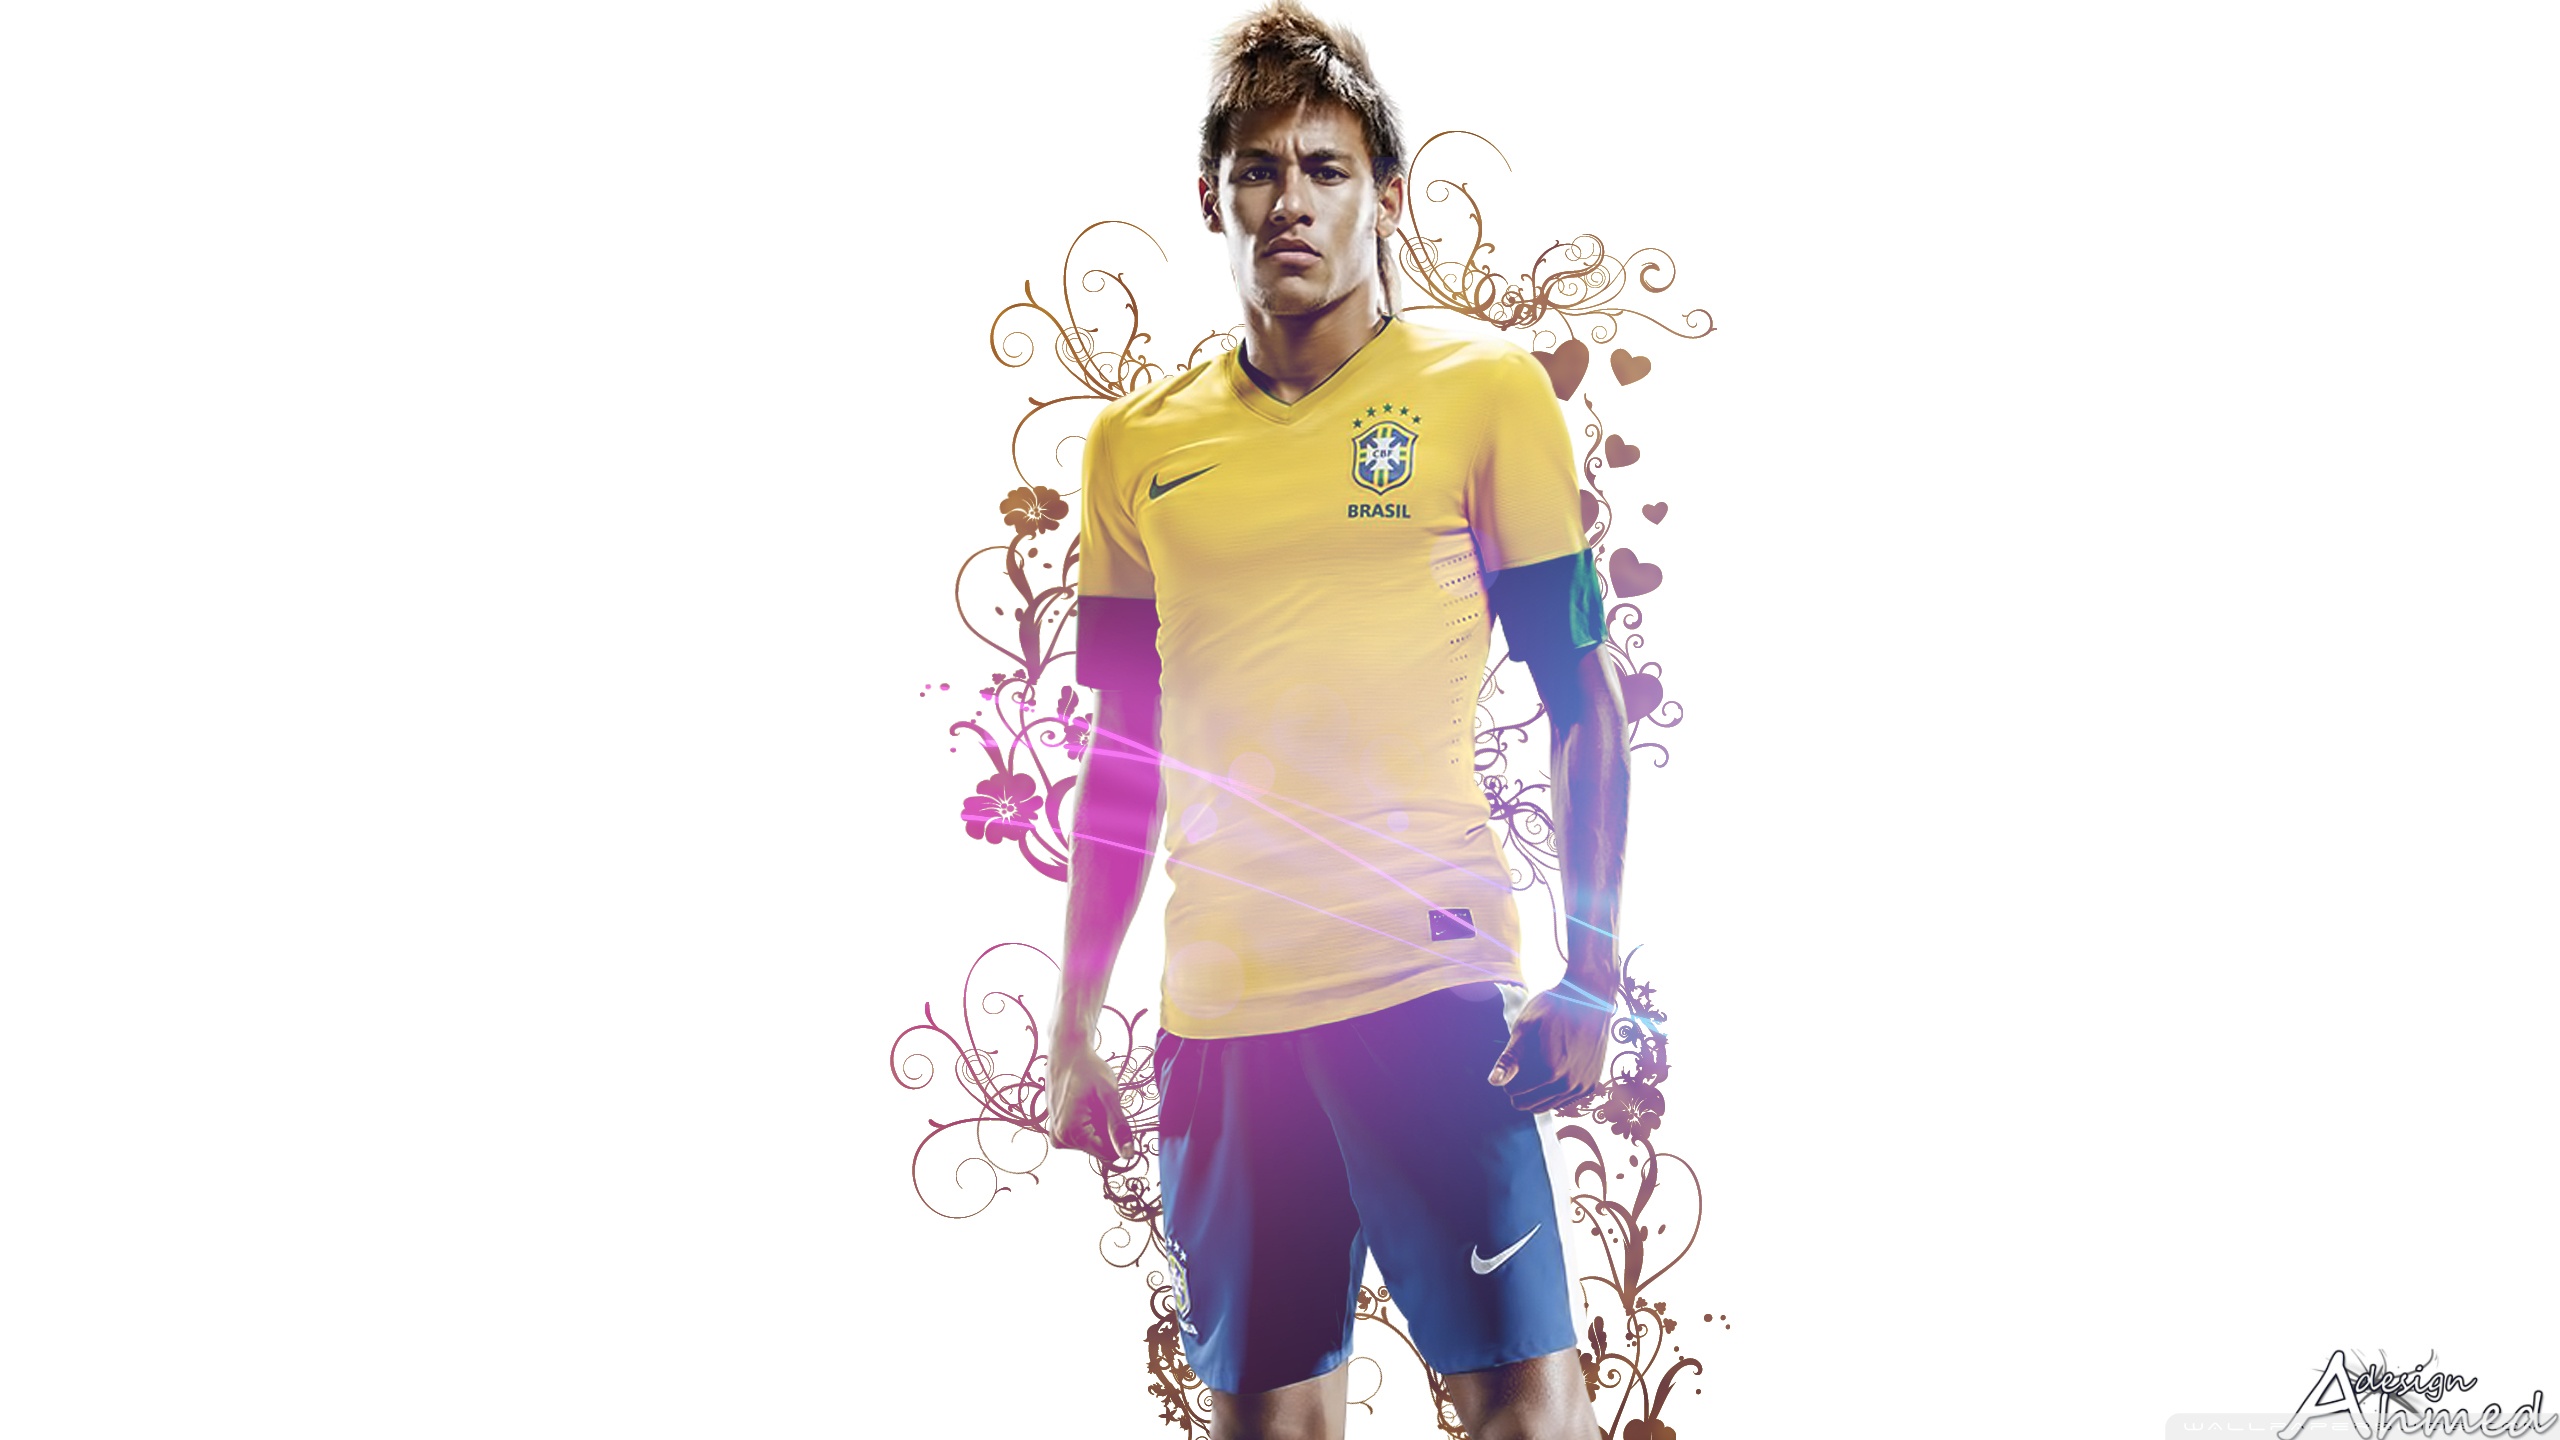 Neymar Wallpaper 1920 X 1024 , HD Wallpaper & Backgrounds